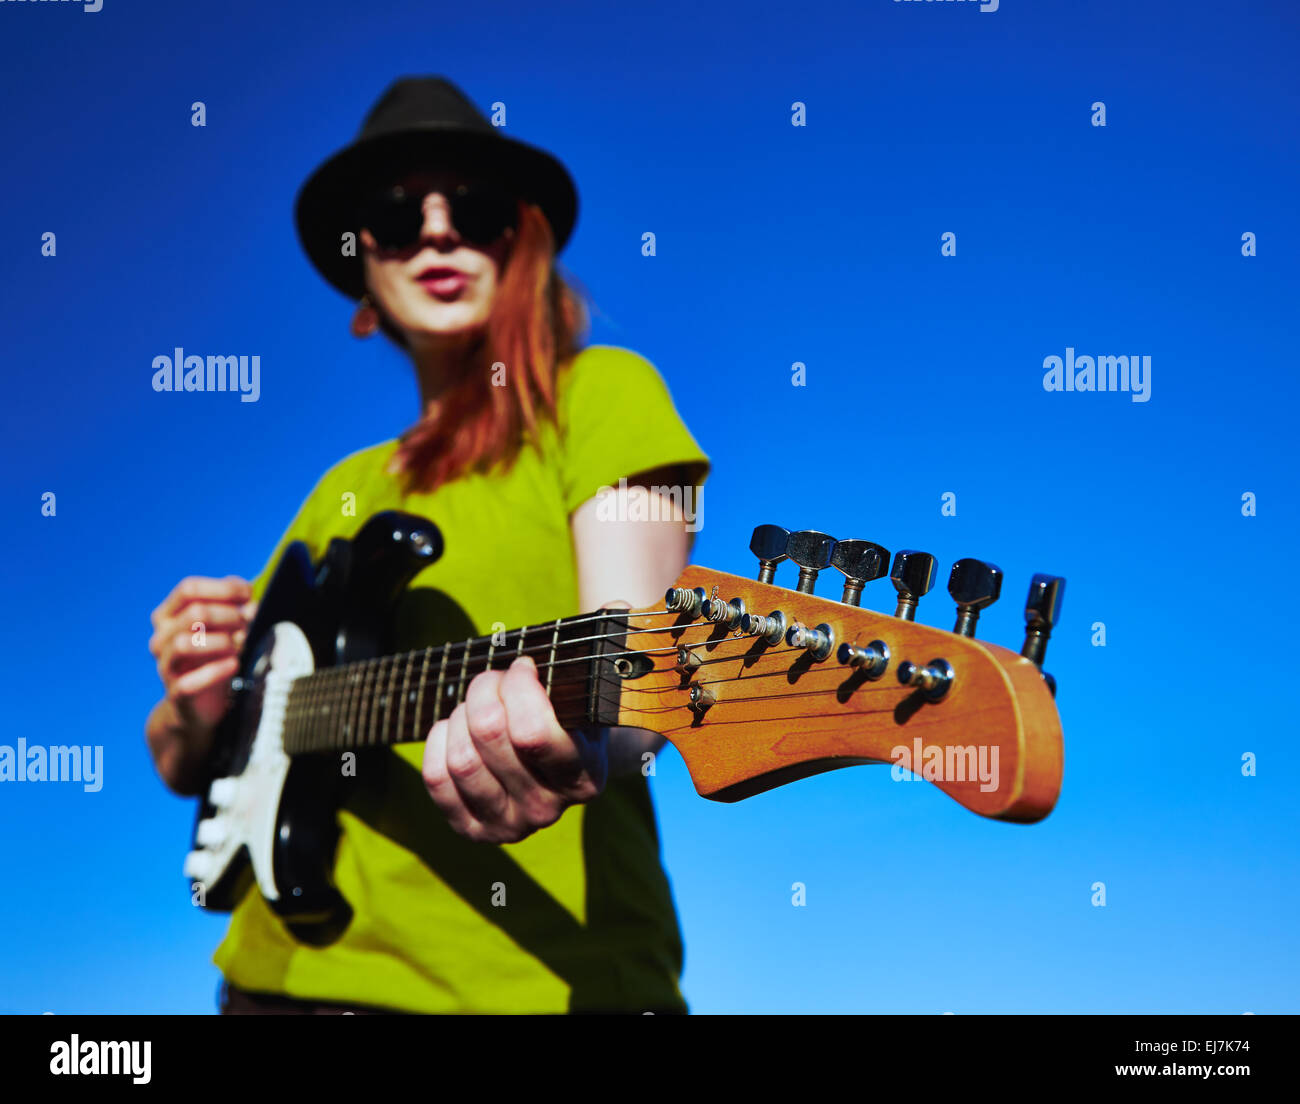 Suonatore ambulante femmina con la chitarra elegante musicista femmina con i capelli rossi indossatore in black hat e camicia verde gioca sulla chitarra. Foto Stock